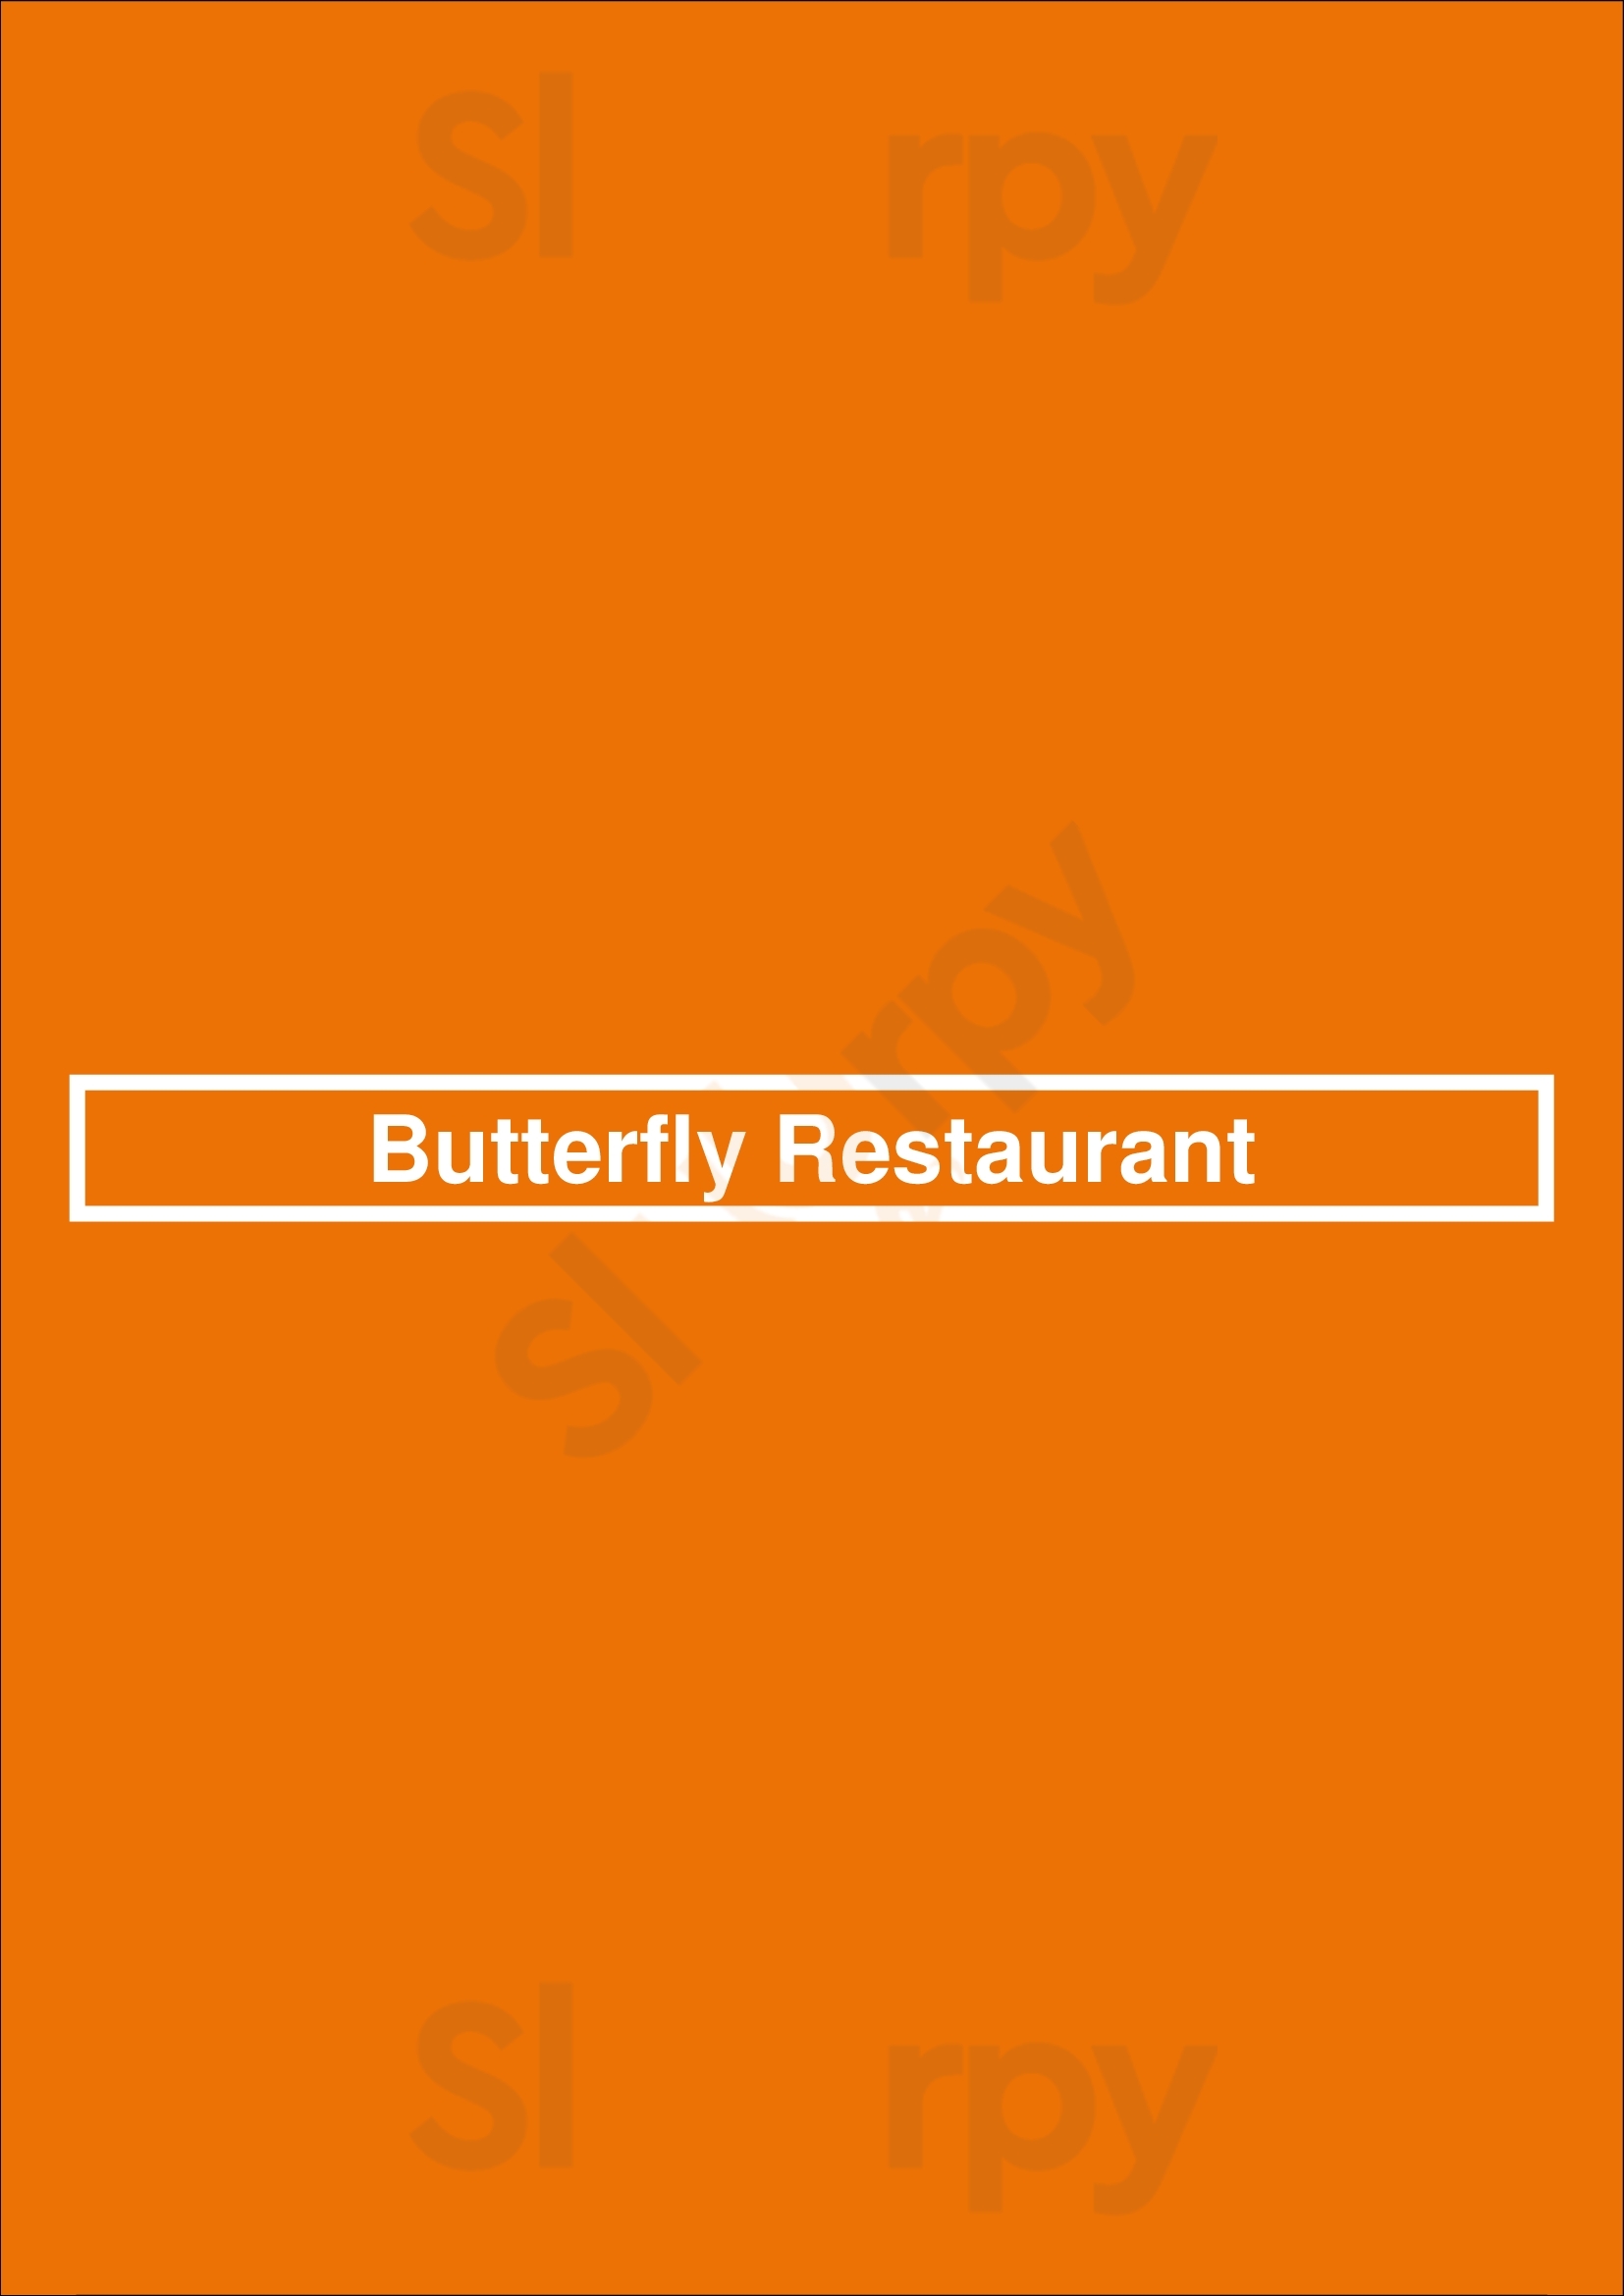 Butterfly Restaurant West Hartford Menu - 1